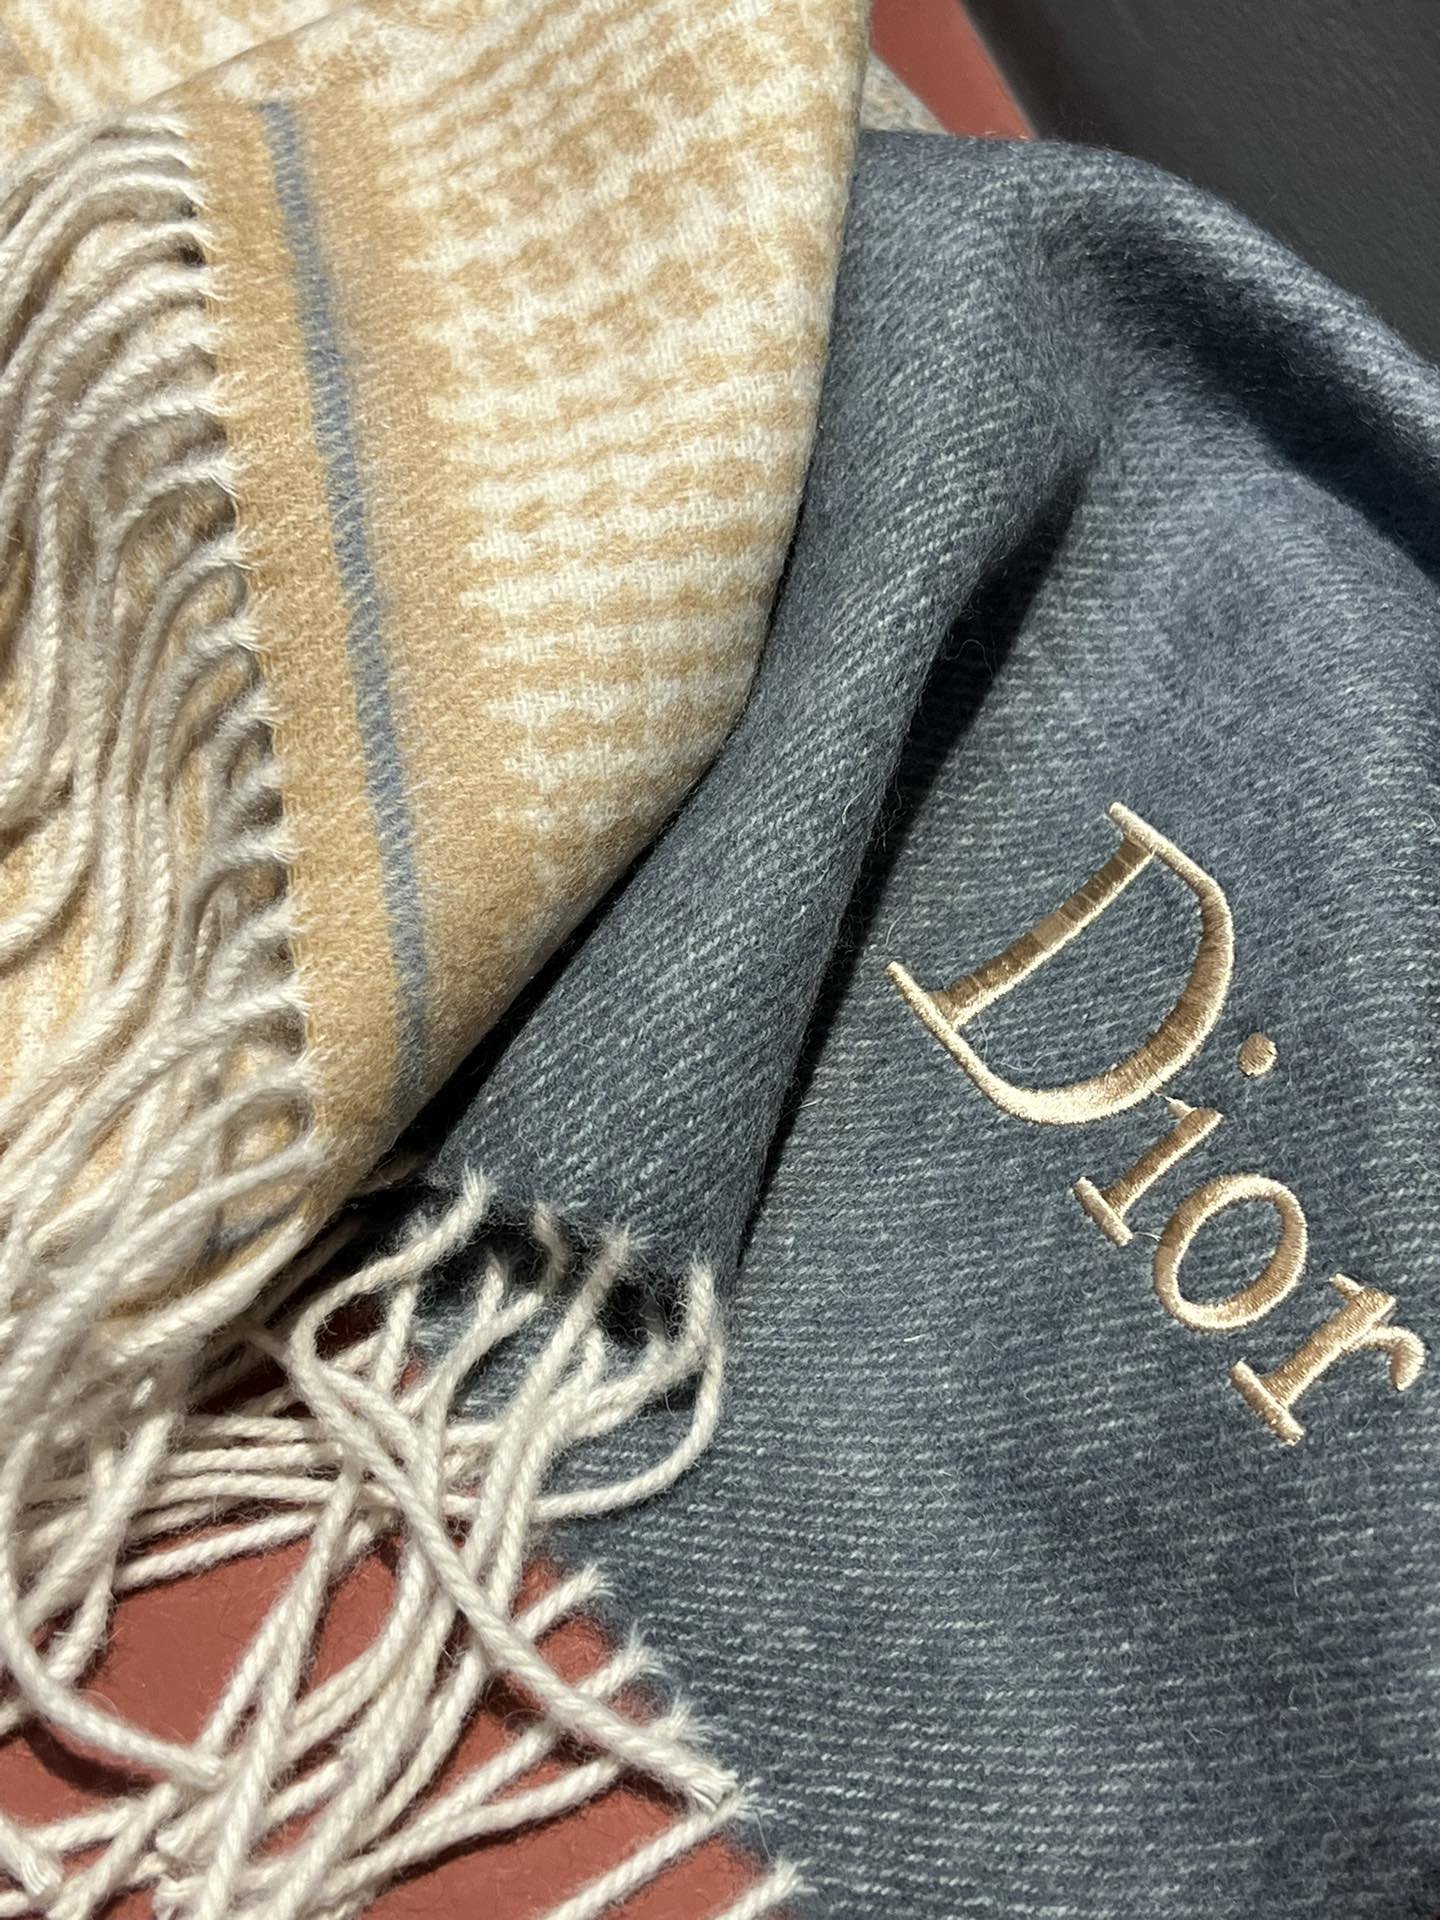 D家出口的订单设计非常简单但那Logo的点缀就是让围巾显得非常高级优雅高端羊绒围巾设计向来都很简约但就是